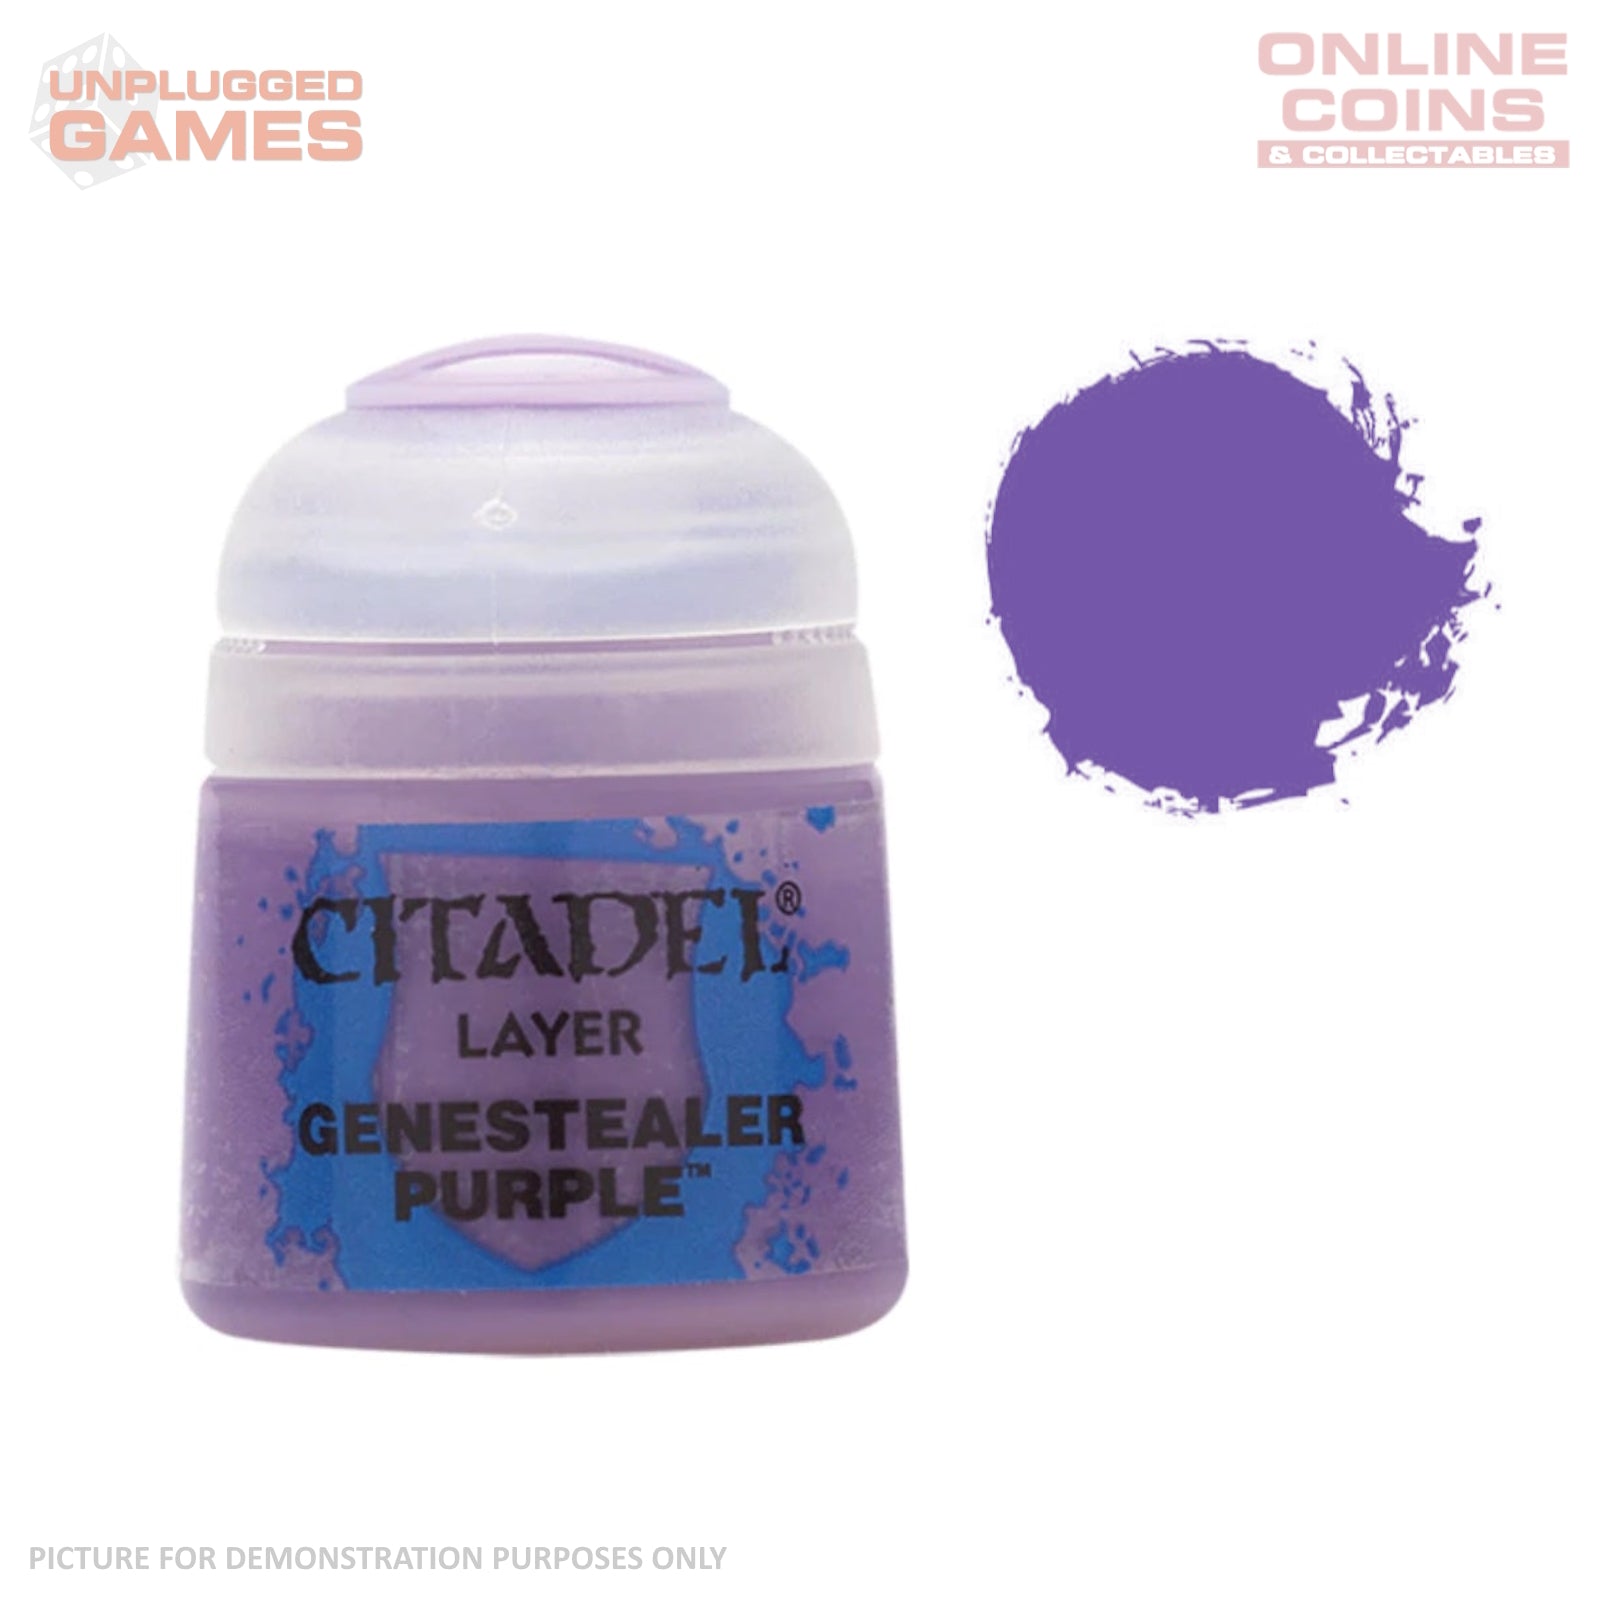 Citadel Layer - 22-10 Genestealer Purple